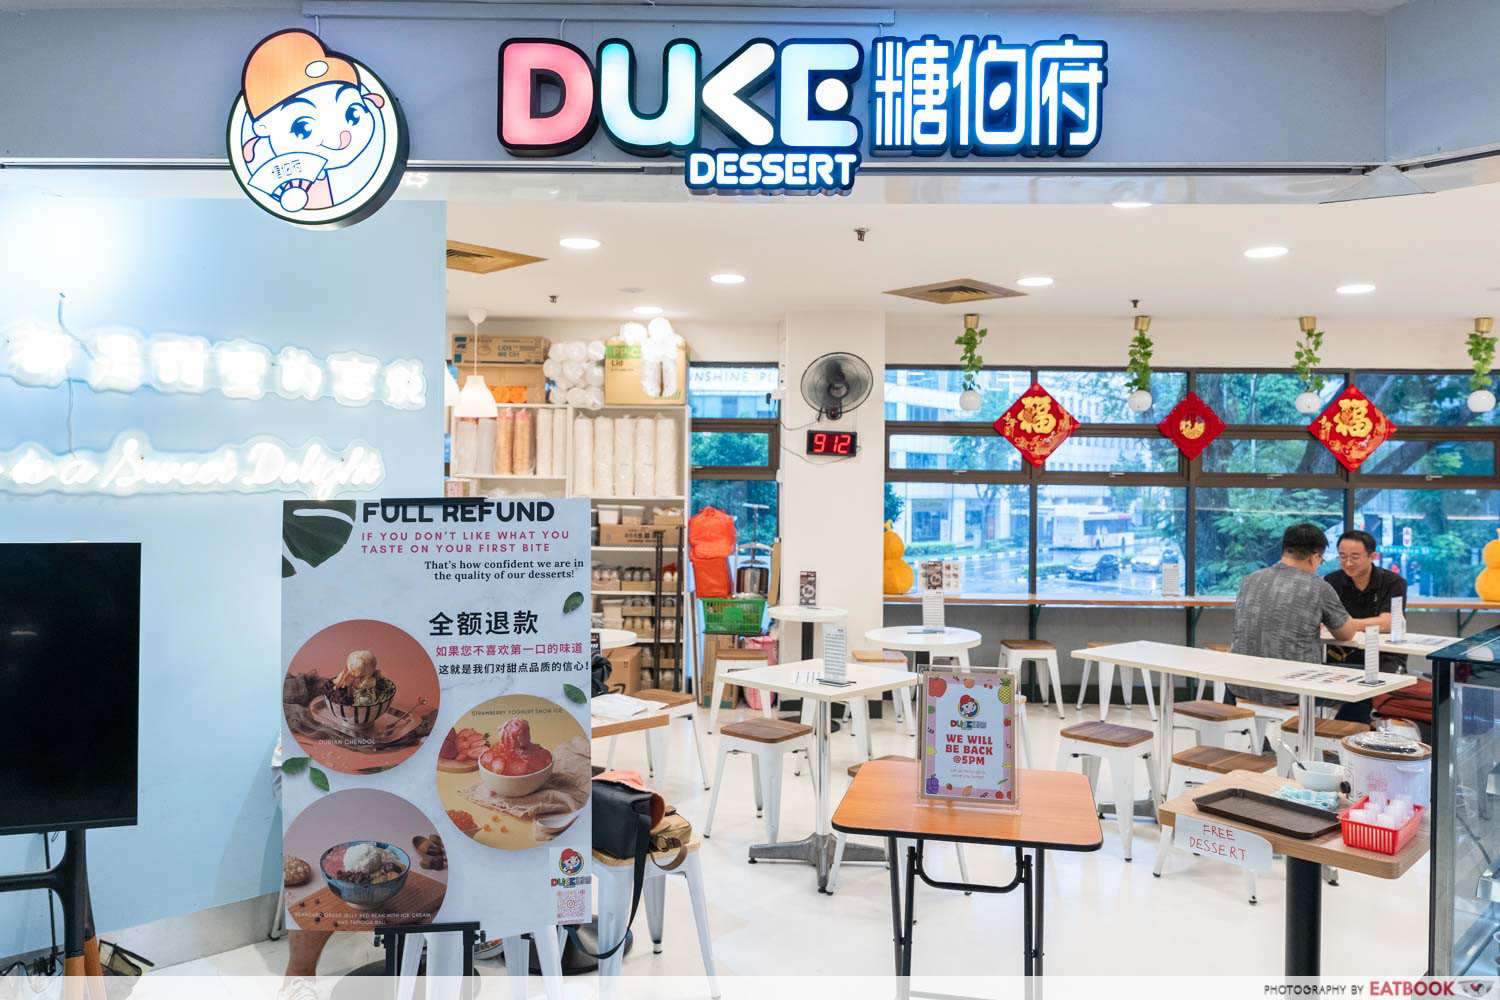 duke-dessert-storefront